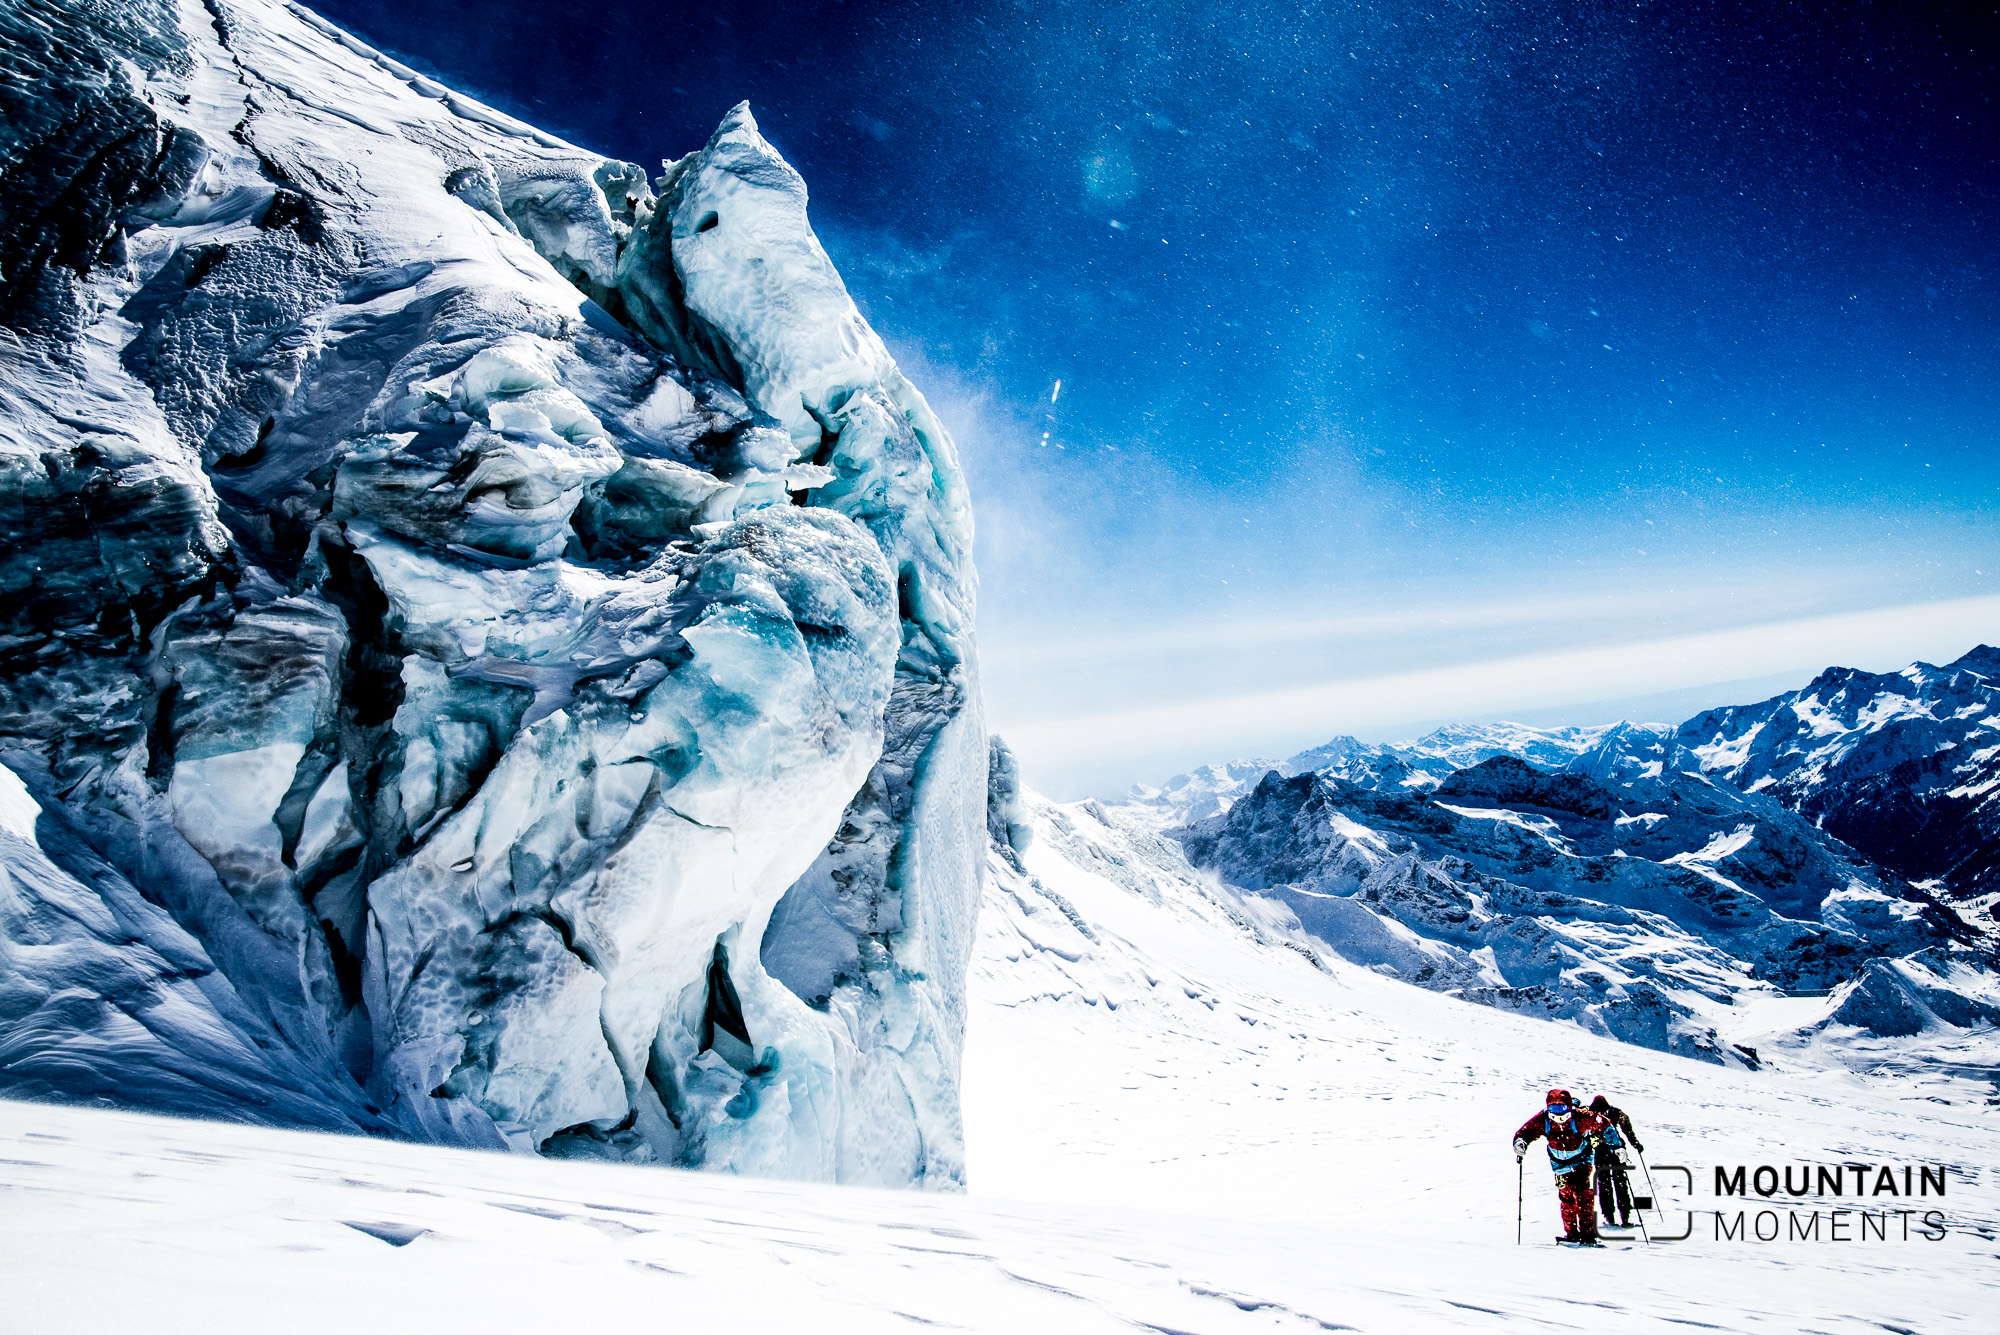 Vinzentpyramide Skitour: Ein hochalpiner Klassiker